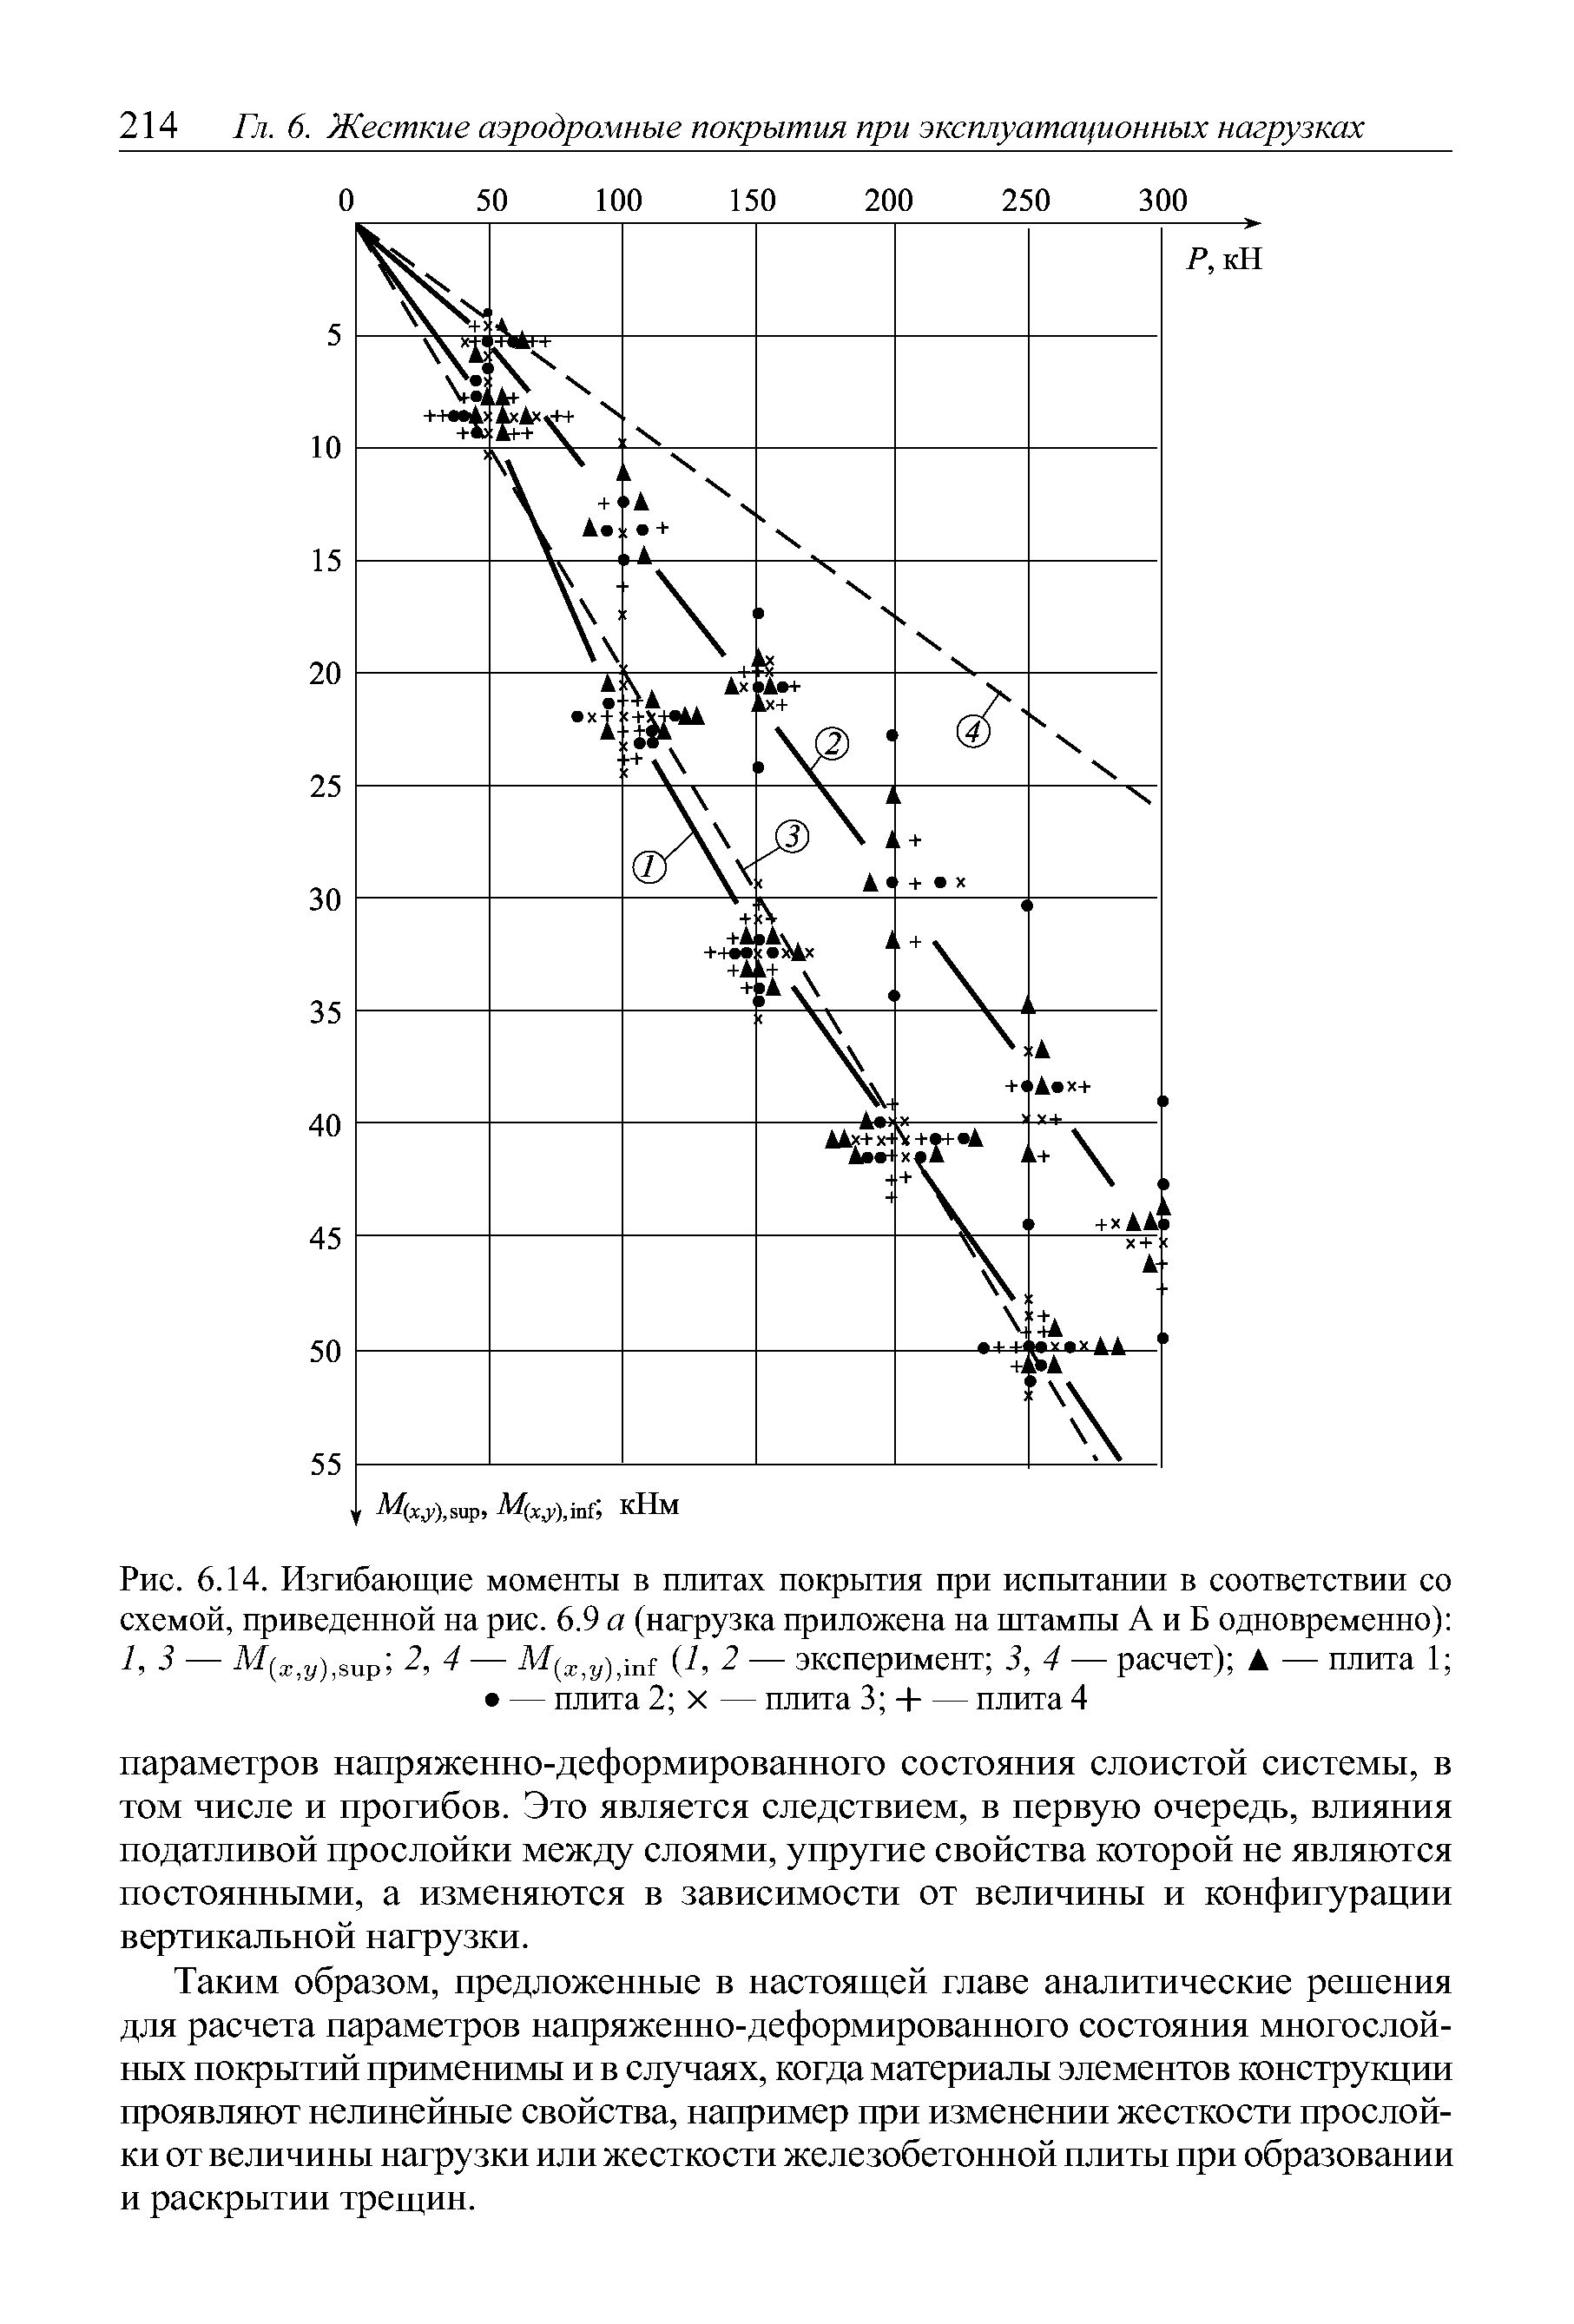 Рис. 6.14. Изгибающие моменты в <a href="/info/600137">плитах покрытия</a> при испытании в соответствии со схемой, приведенной на рис. 6.9 а (нагрузка приложена на штампы А и Б одновременно) 1,3 — 2, 4 — 1, 2 — эксперимент 3, 4 — расчет) — плита 1 — плита 2 X — плита 3 Ч--плита 4
